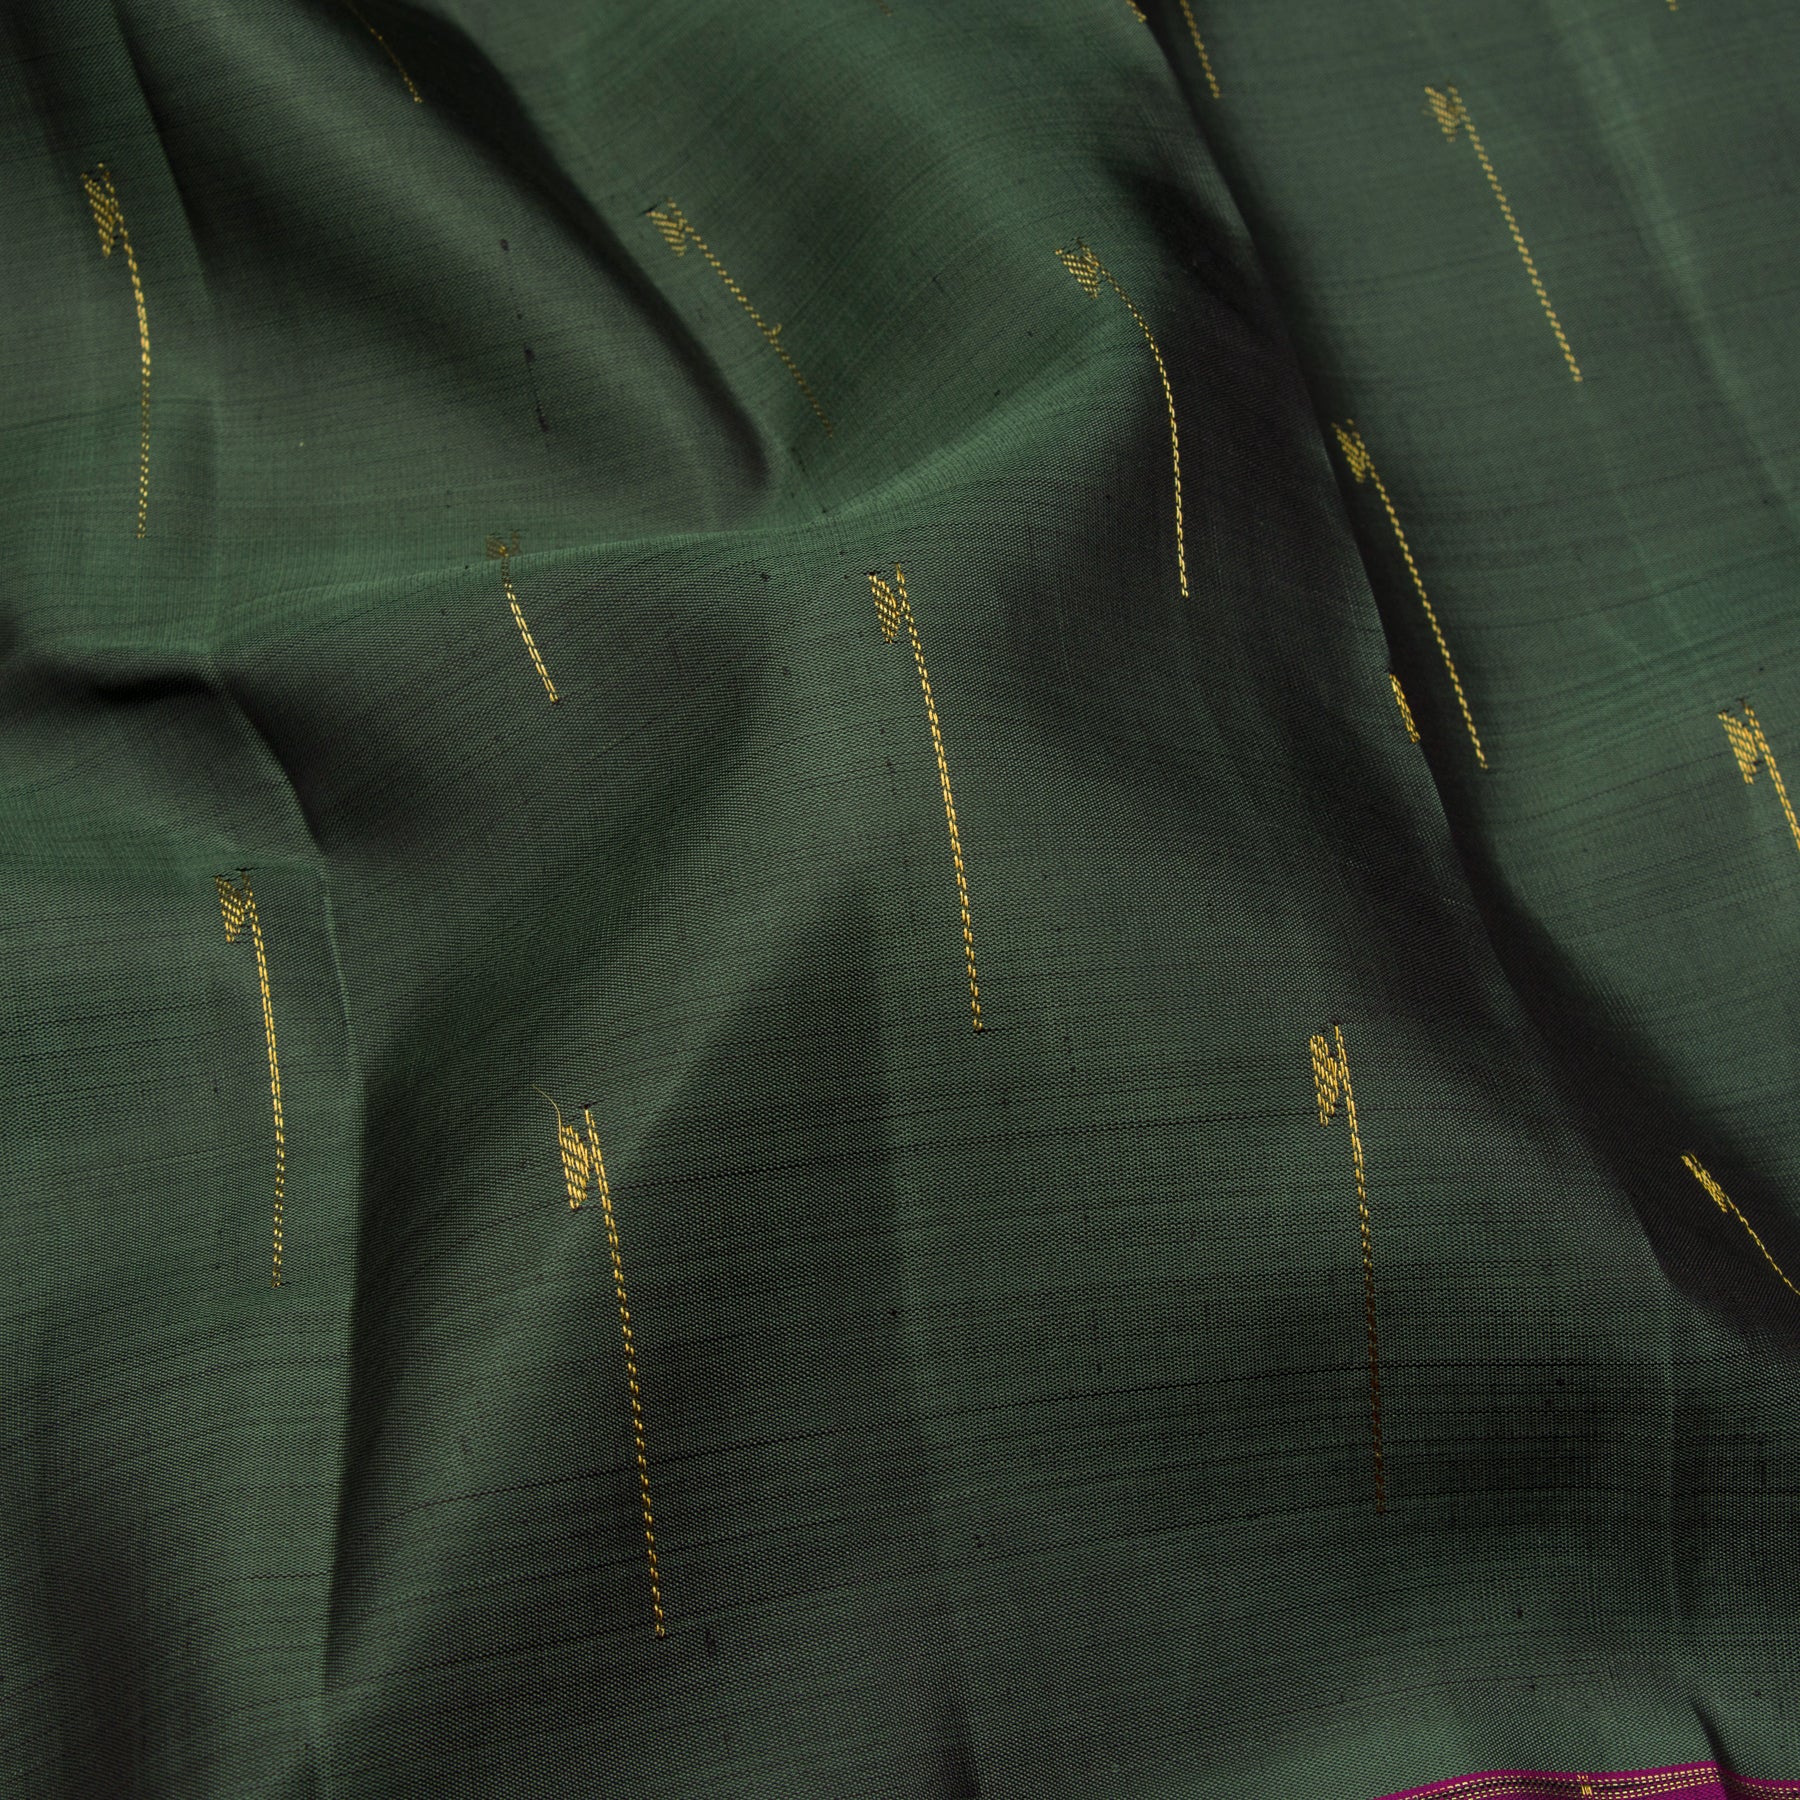 Kanakavalli Kanjivaram Silk Sari 23-599-HS001-13801 - Fabric View